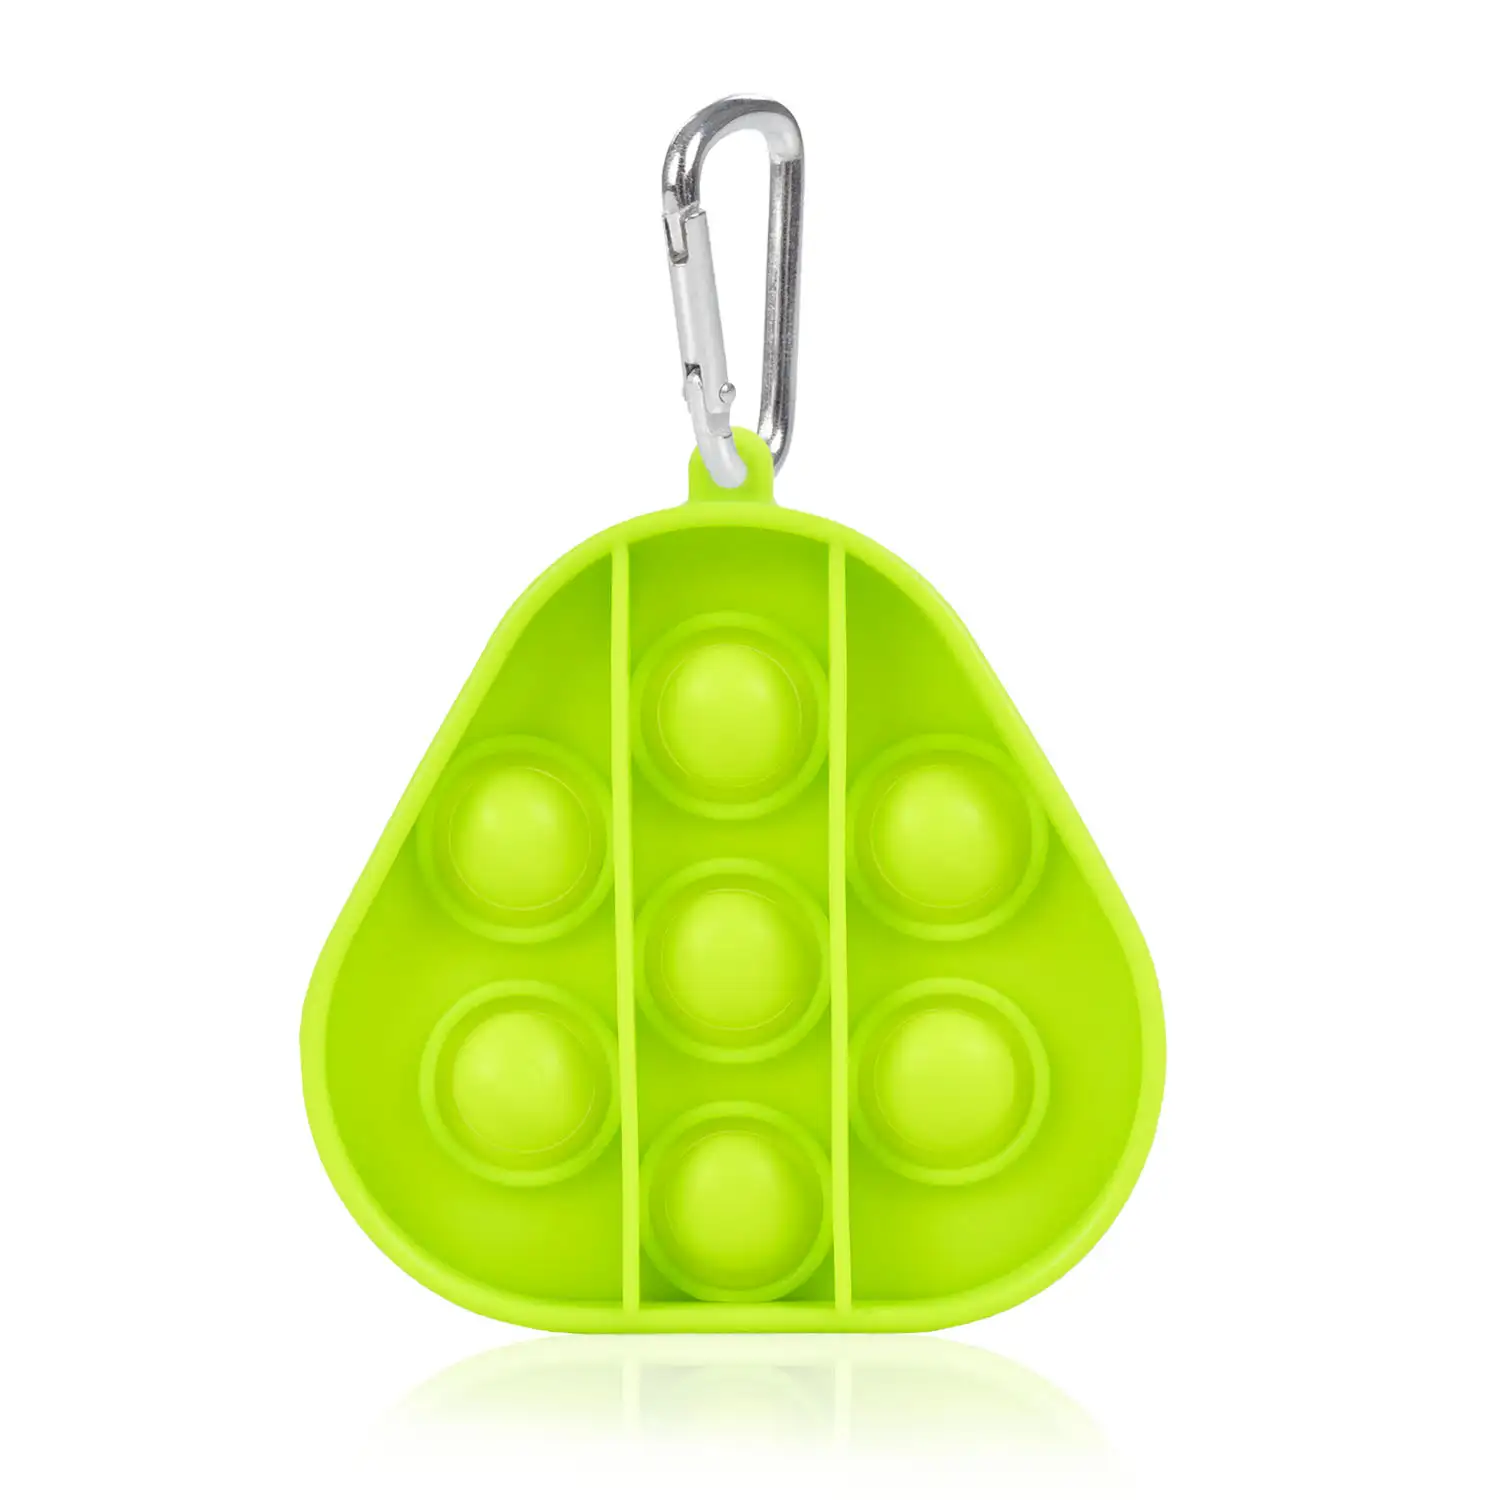 Mini Bubble Pop It juguete sensitivo desestresante, burbujas de silicona para apretar y pulsar. Diseño triángulo con llavero.